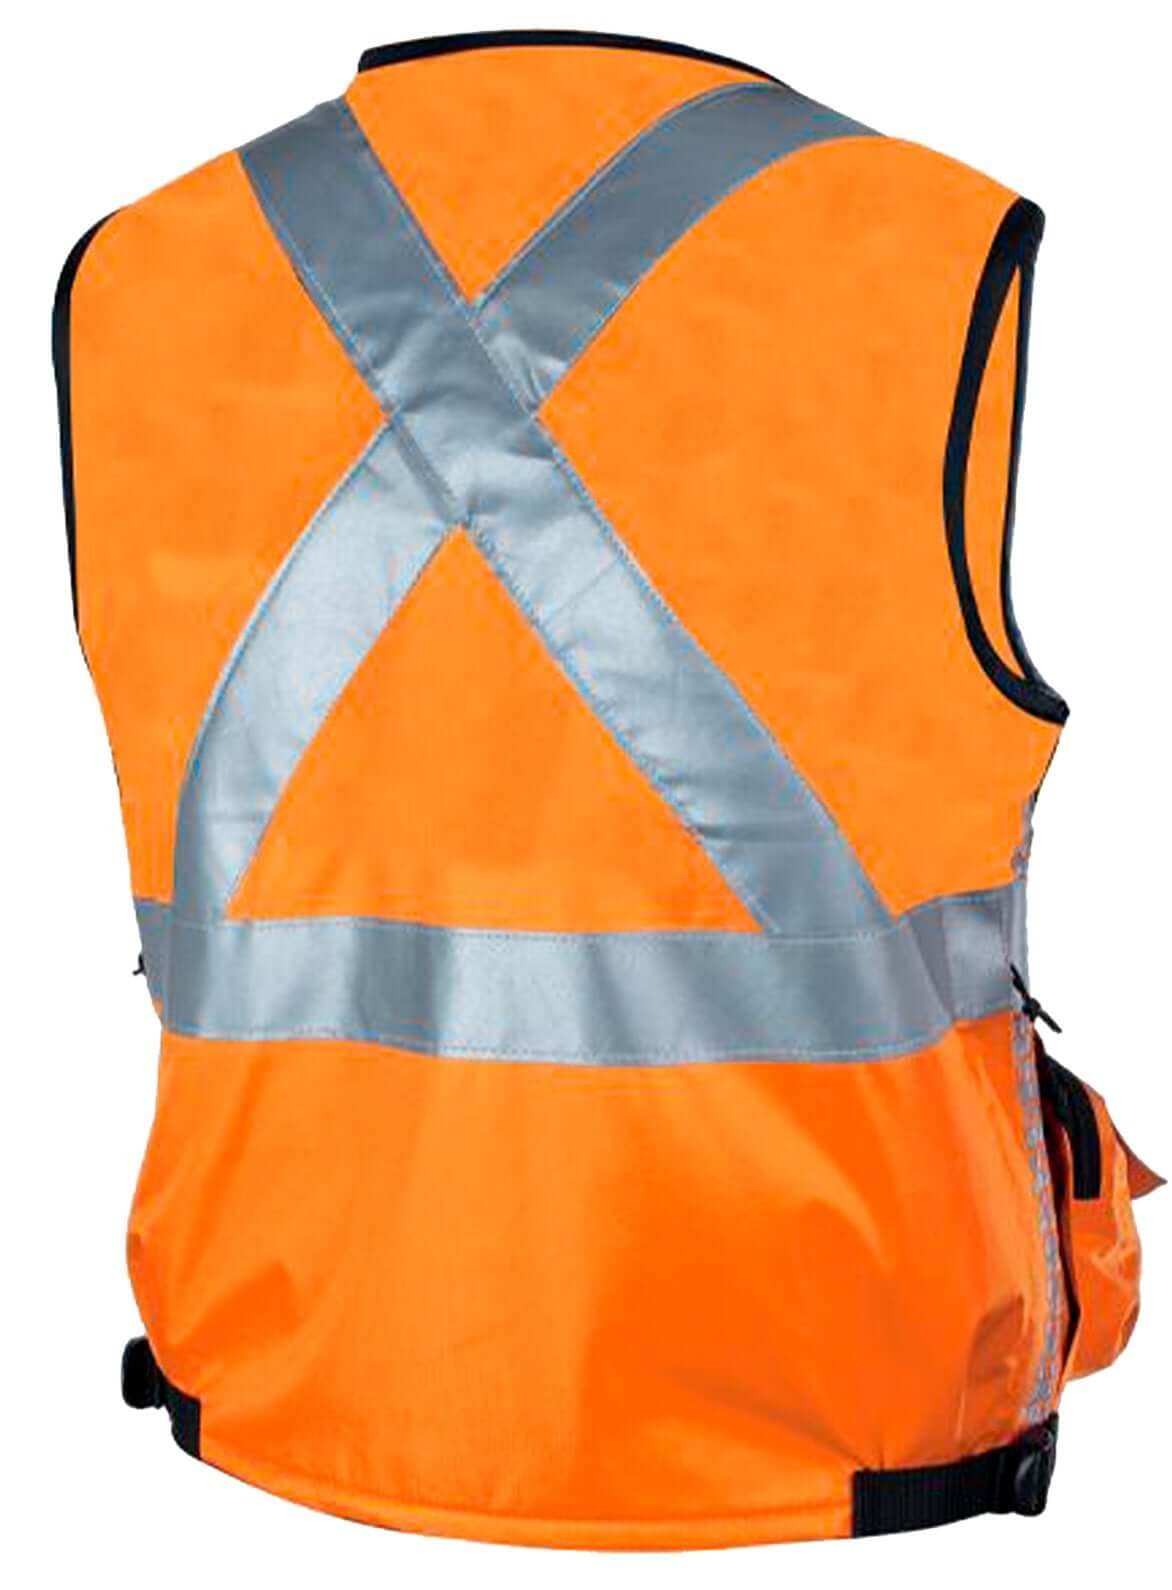 Peregrin Fireproof/antacid Reflective Safety Vest N1 Orange